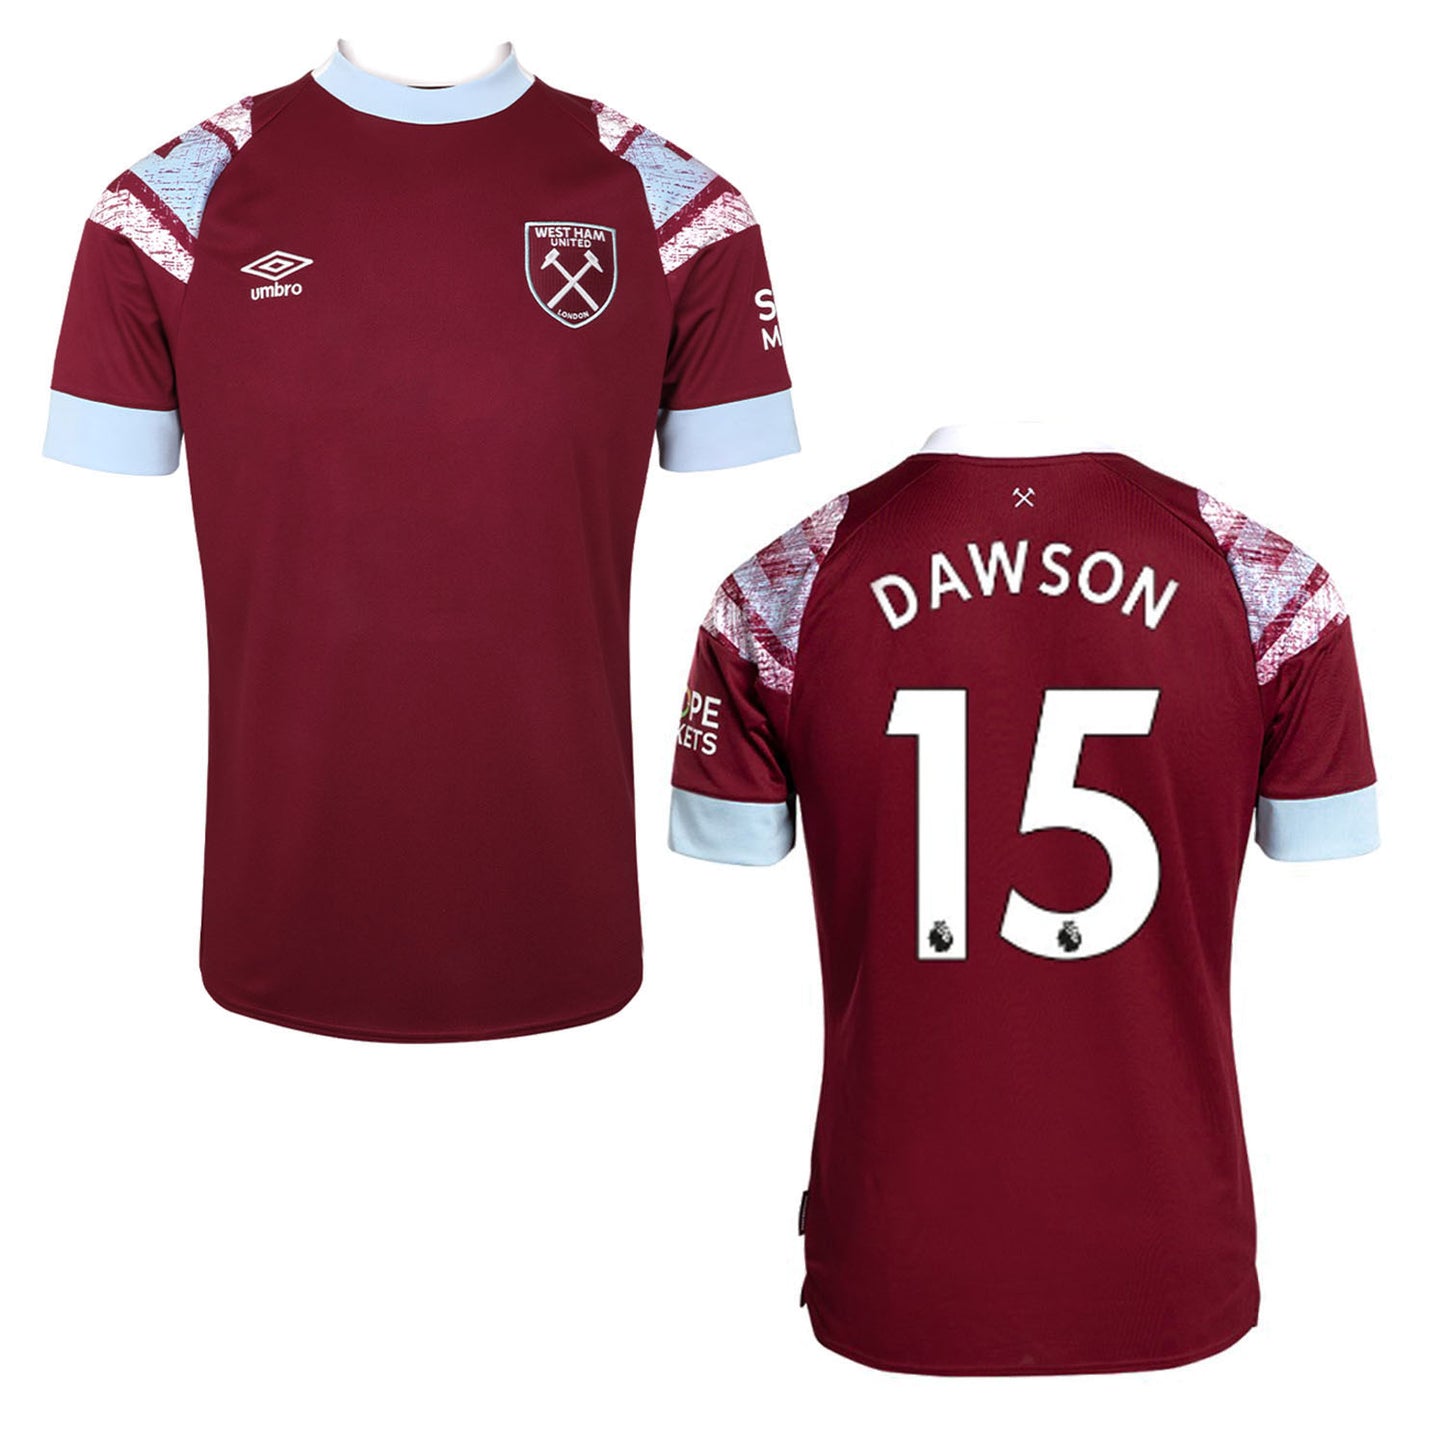 Craig Dawson West Ham 15 Jersey